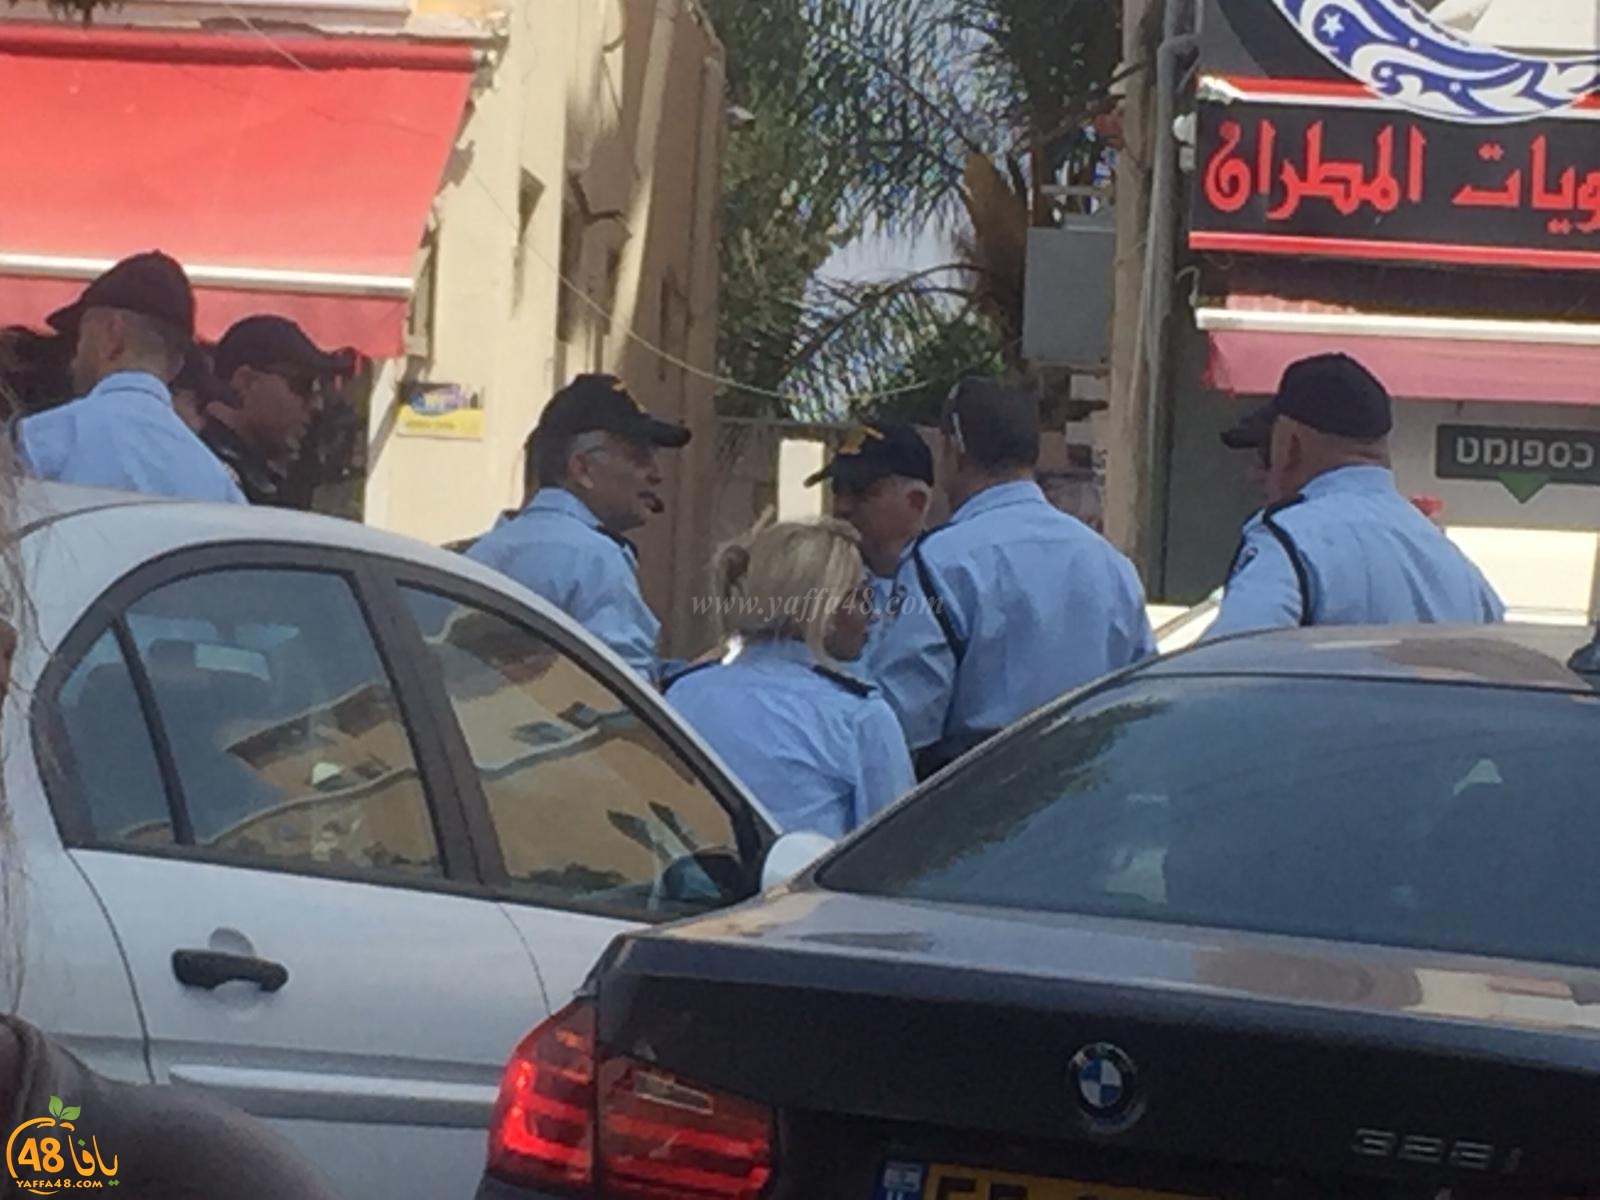  بالصور: انتشار مكثّف للشرطة في يافا عشية اقامة صلاة الجمعة في حديقة العجمي 